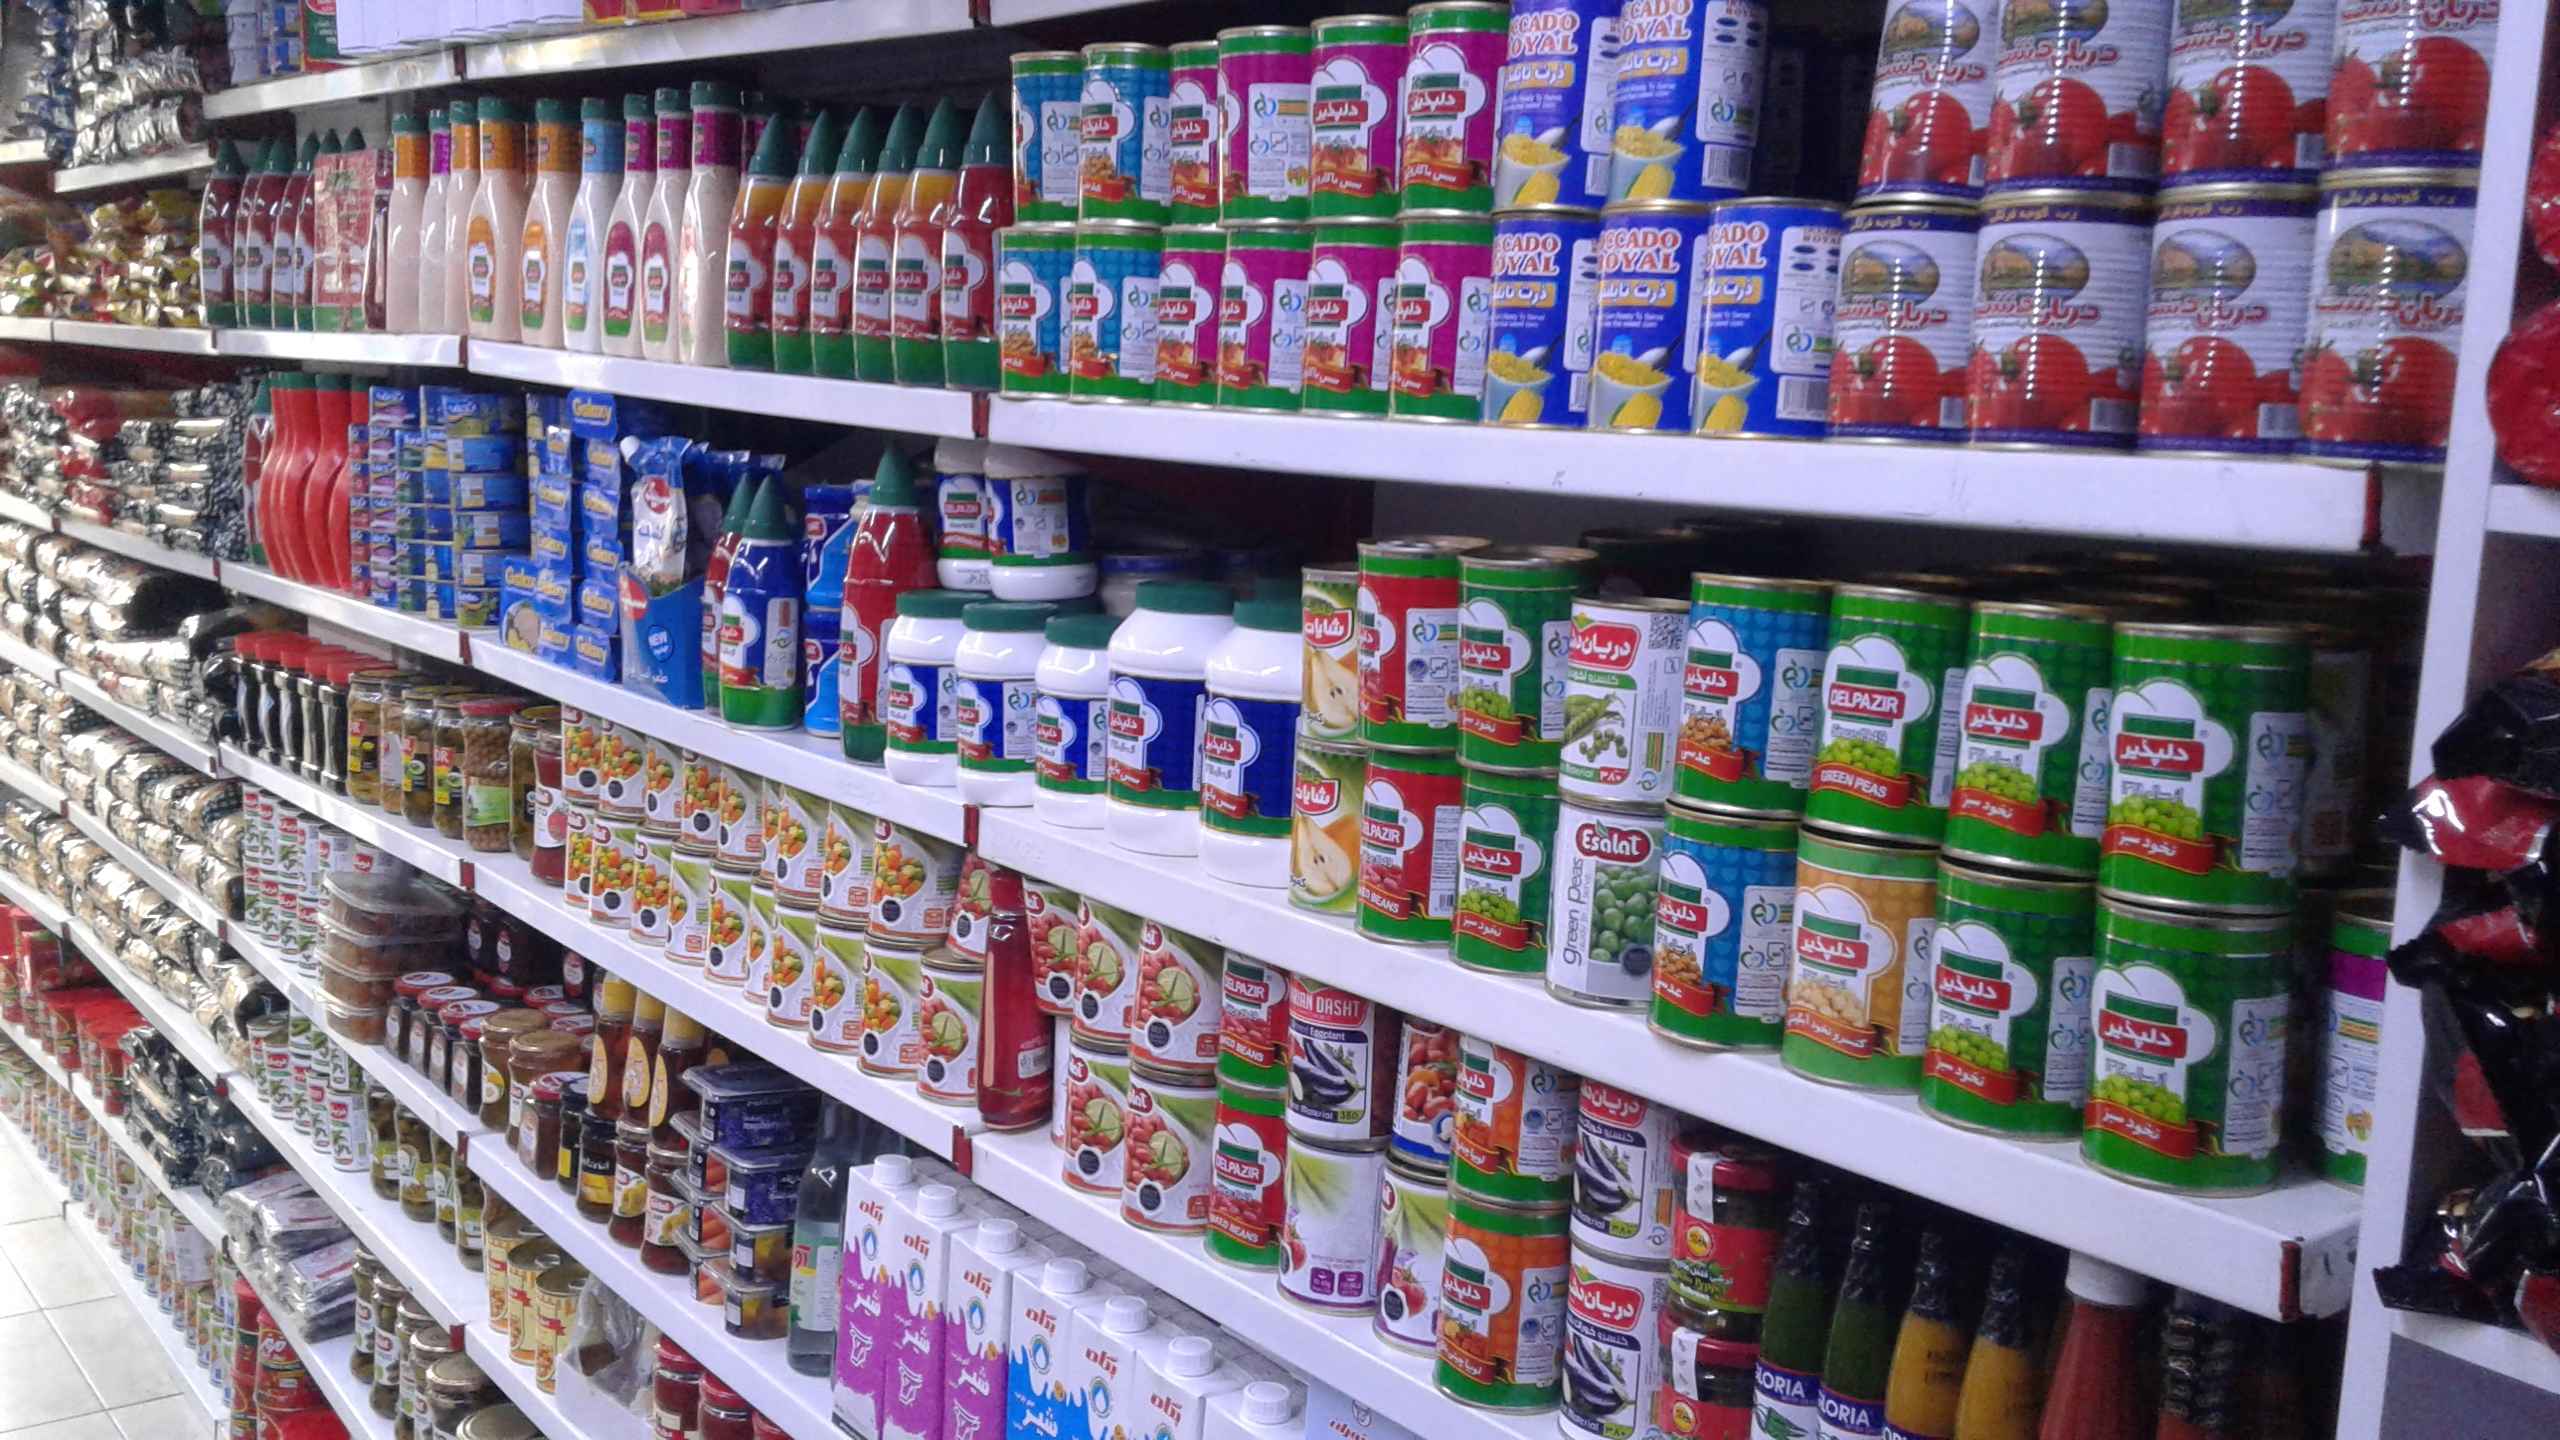 ویروس کرونا؛ آیا محصولات خریداری شده از سوپرمارکت نیاز به ضد عفونی دارند؟